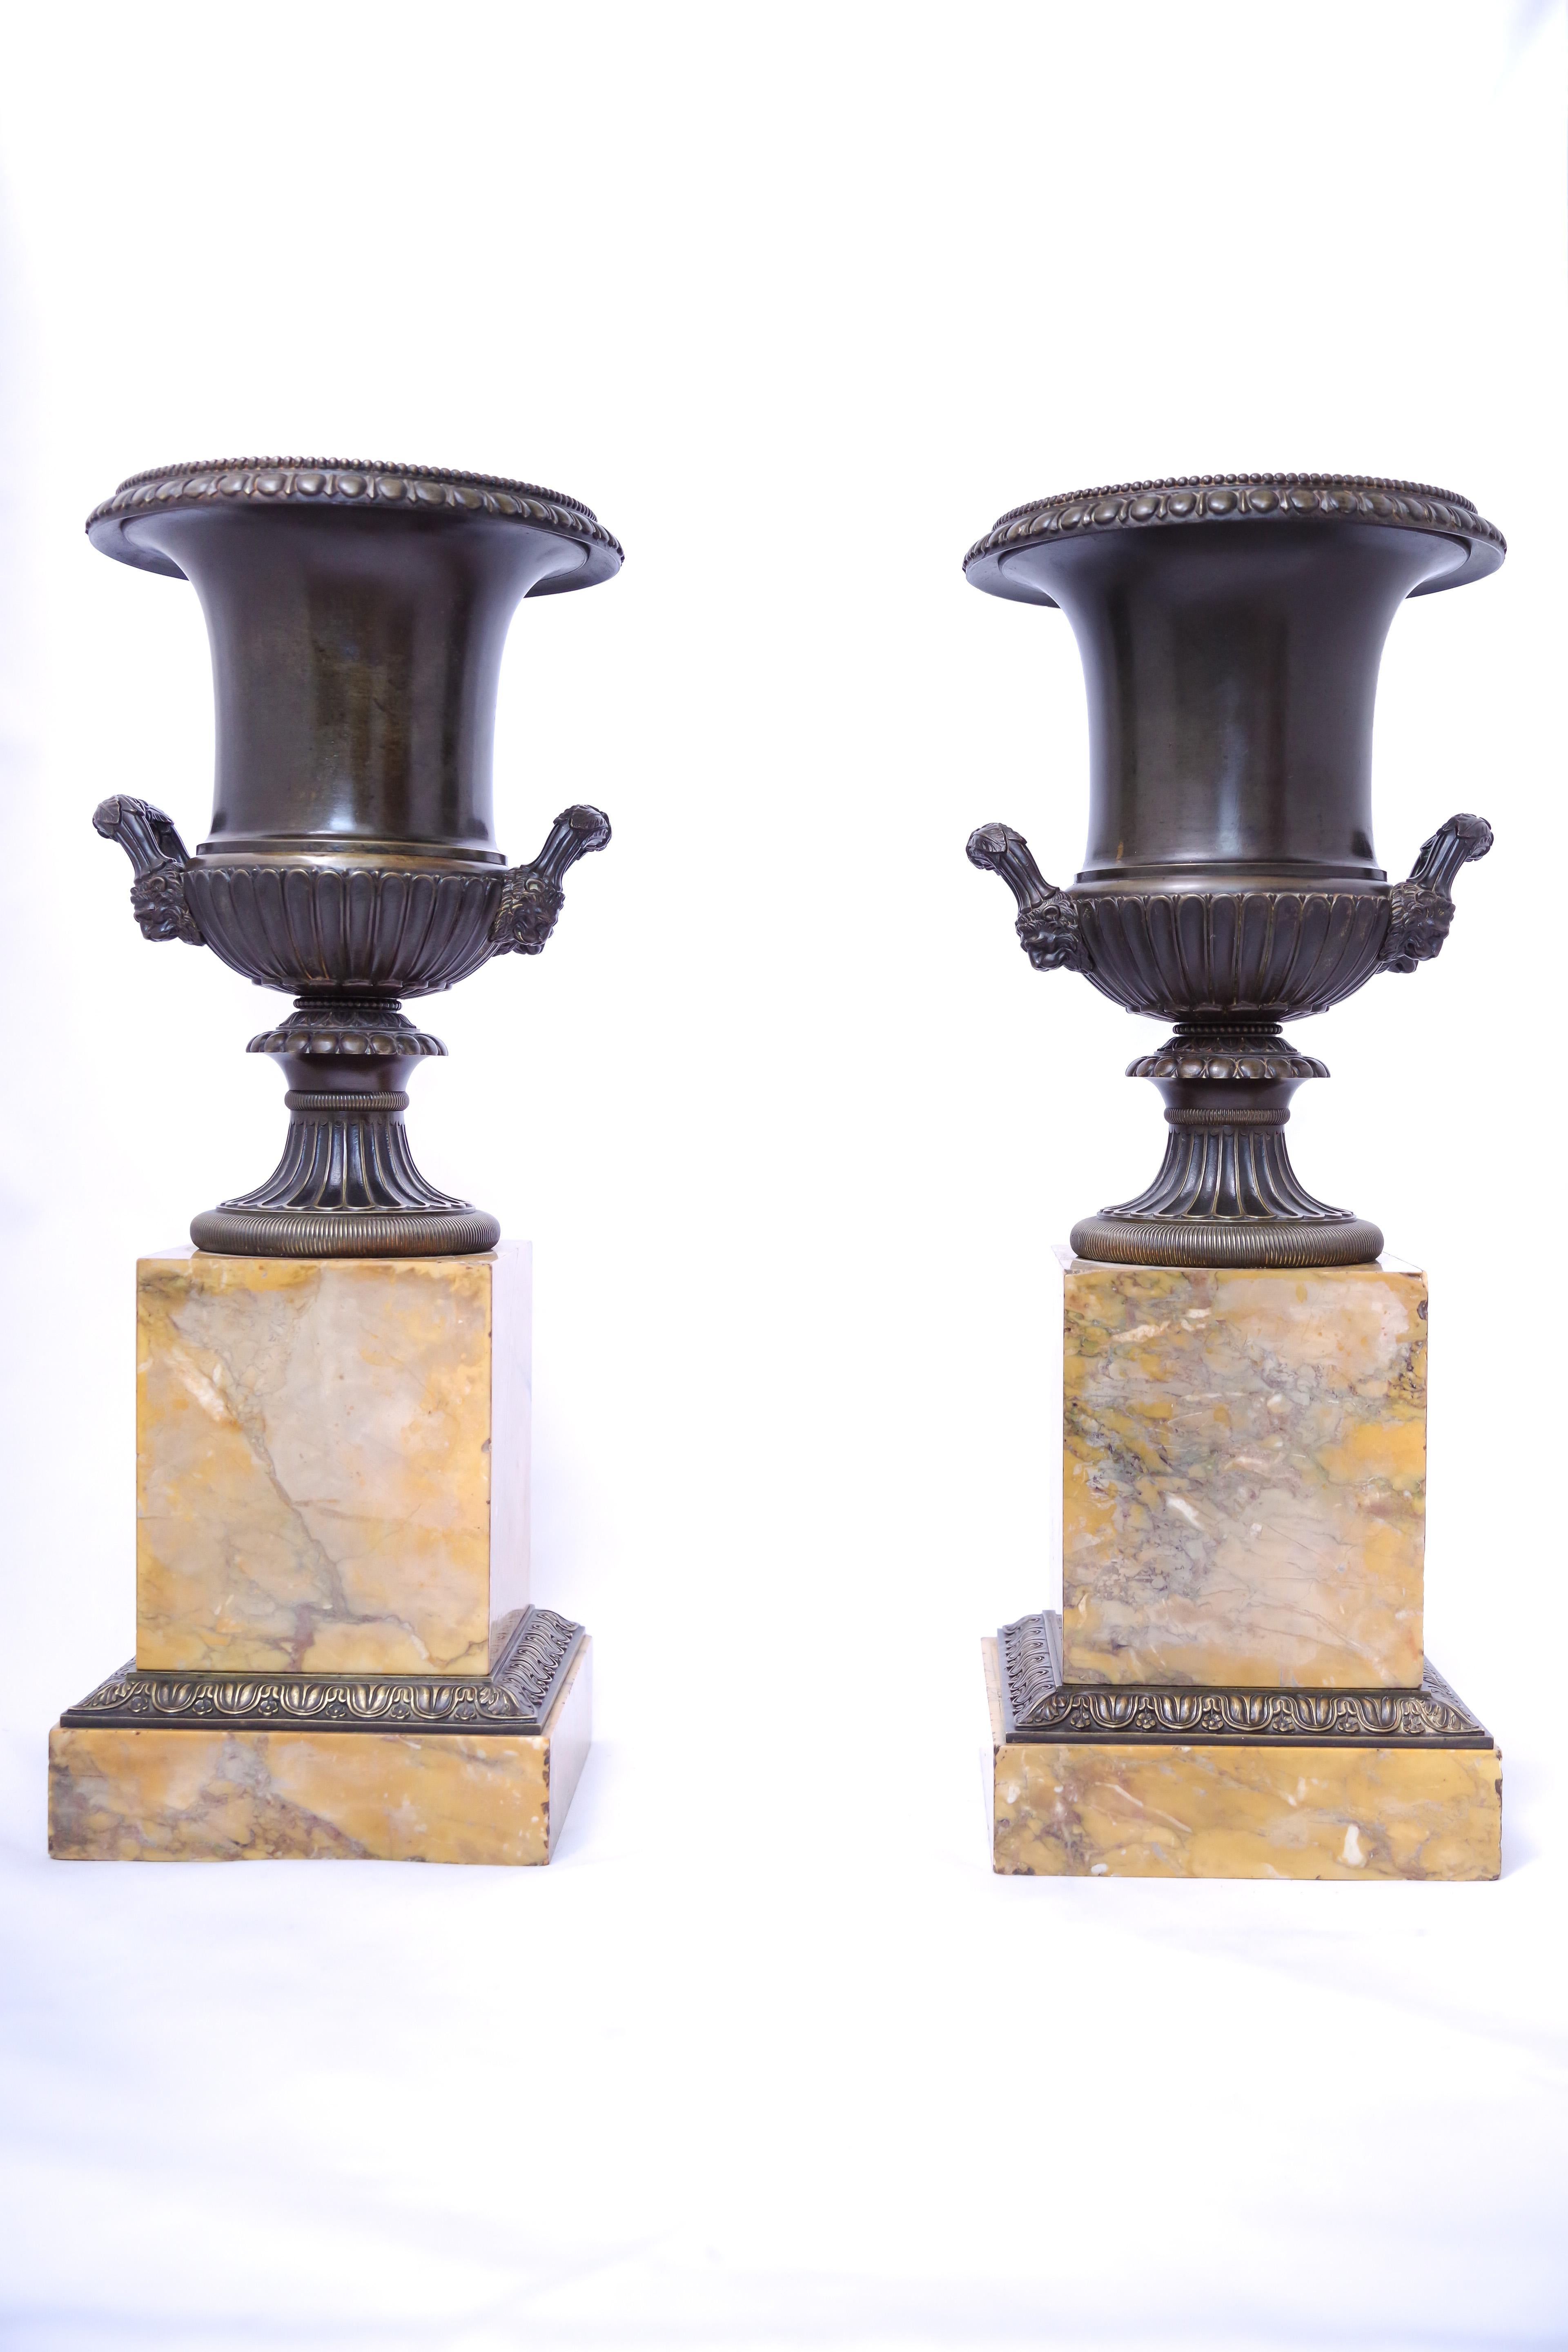 Paire de vases Médicis en bronze d'époque Charles X, vers 1830. Les bases sont en marbre jaune de Sienne, si populaire en France au début et au milieu du siècle dernier. Les vases patinés vert noirâtre sont ornés de motifs classiques finement